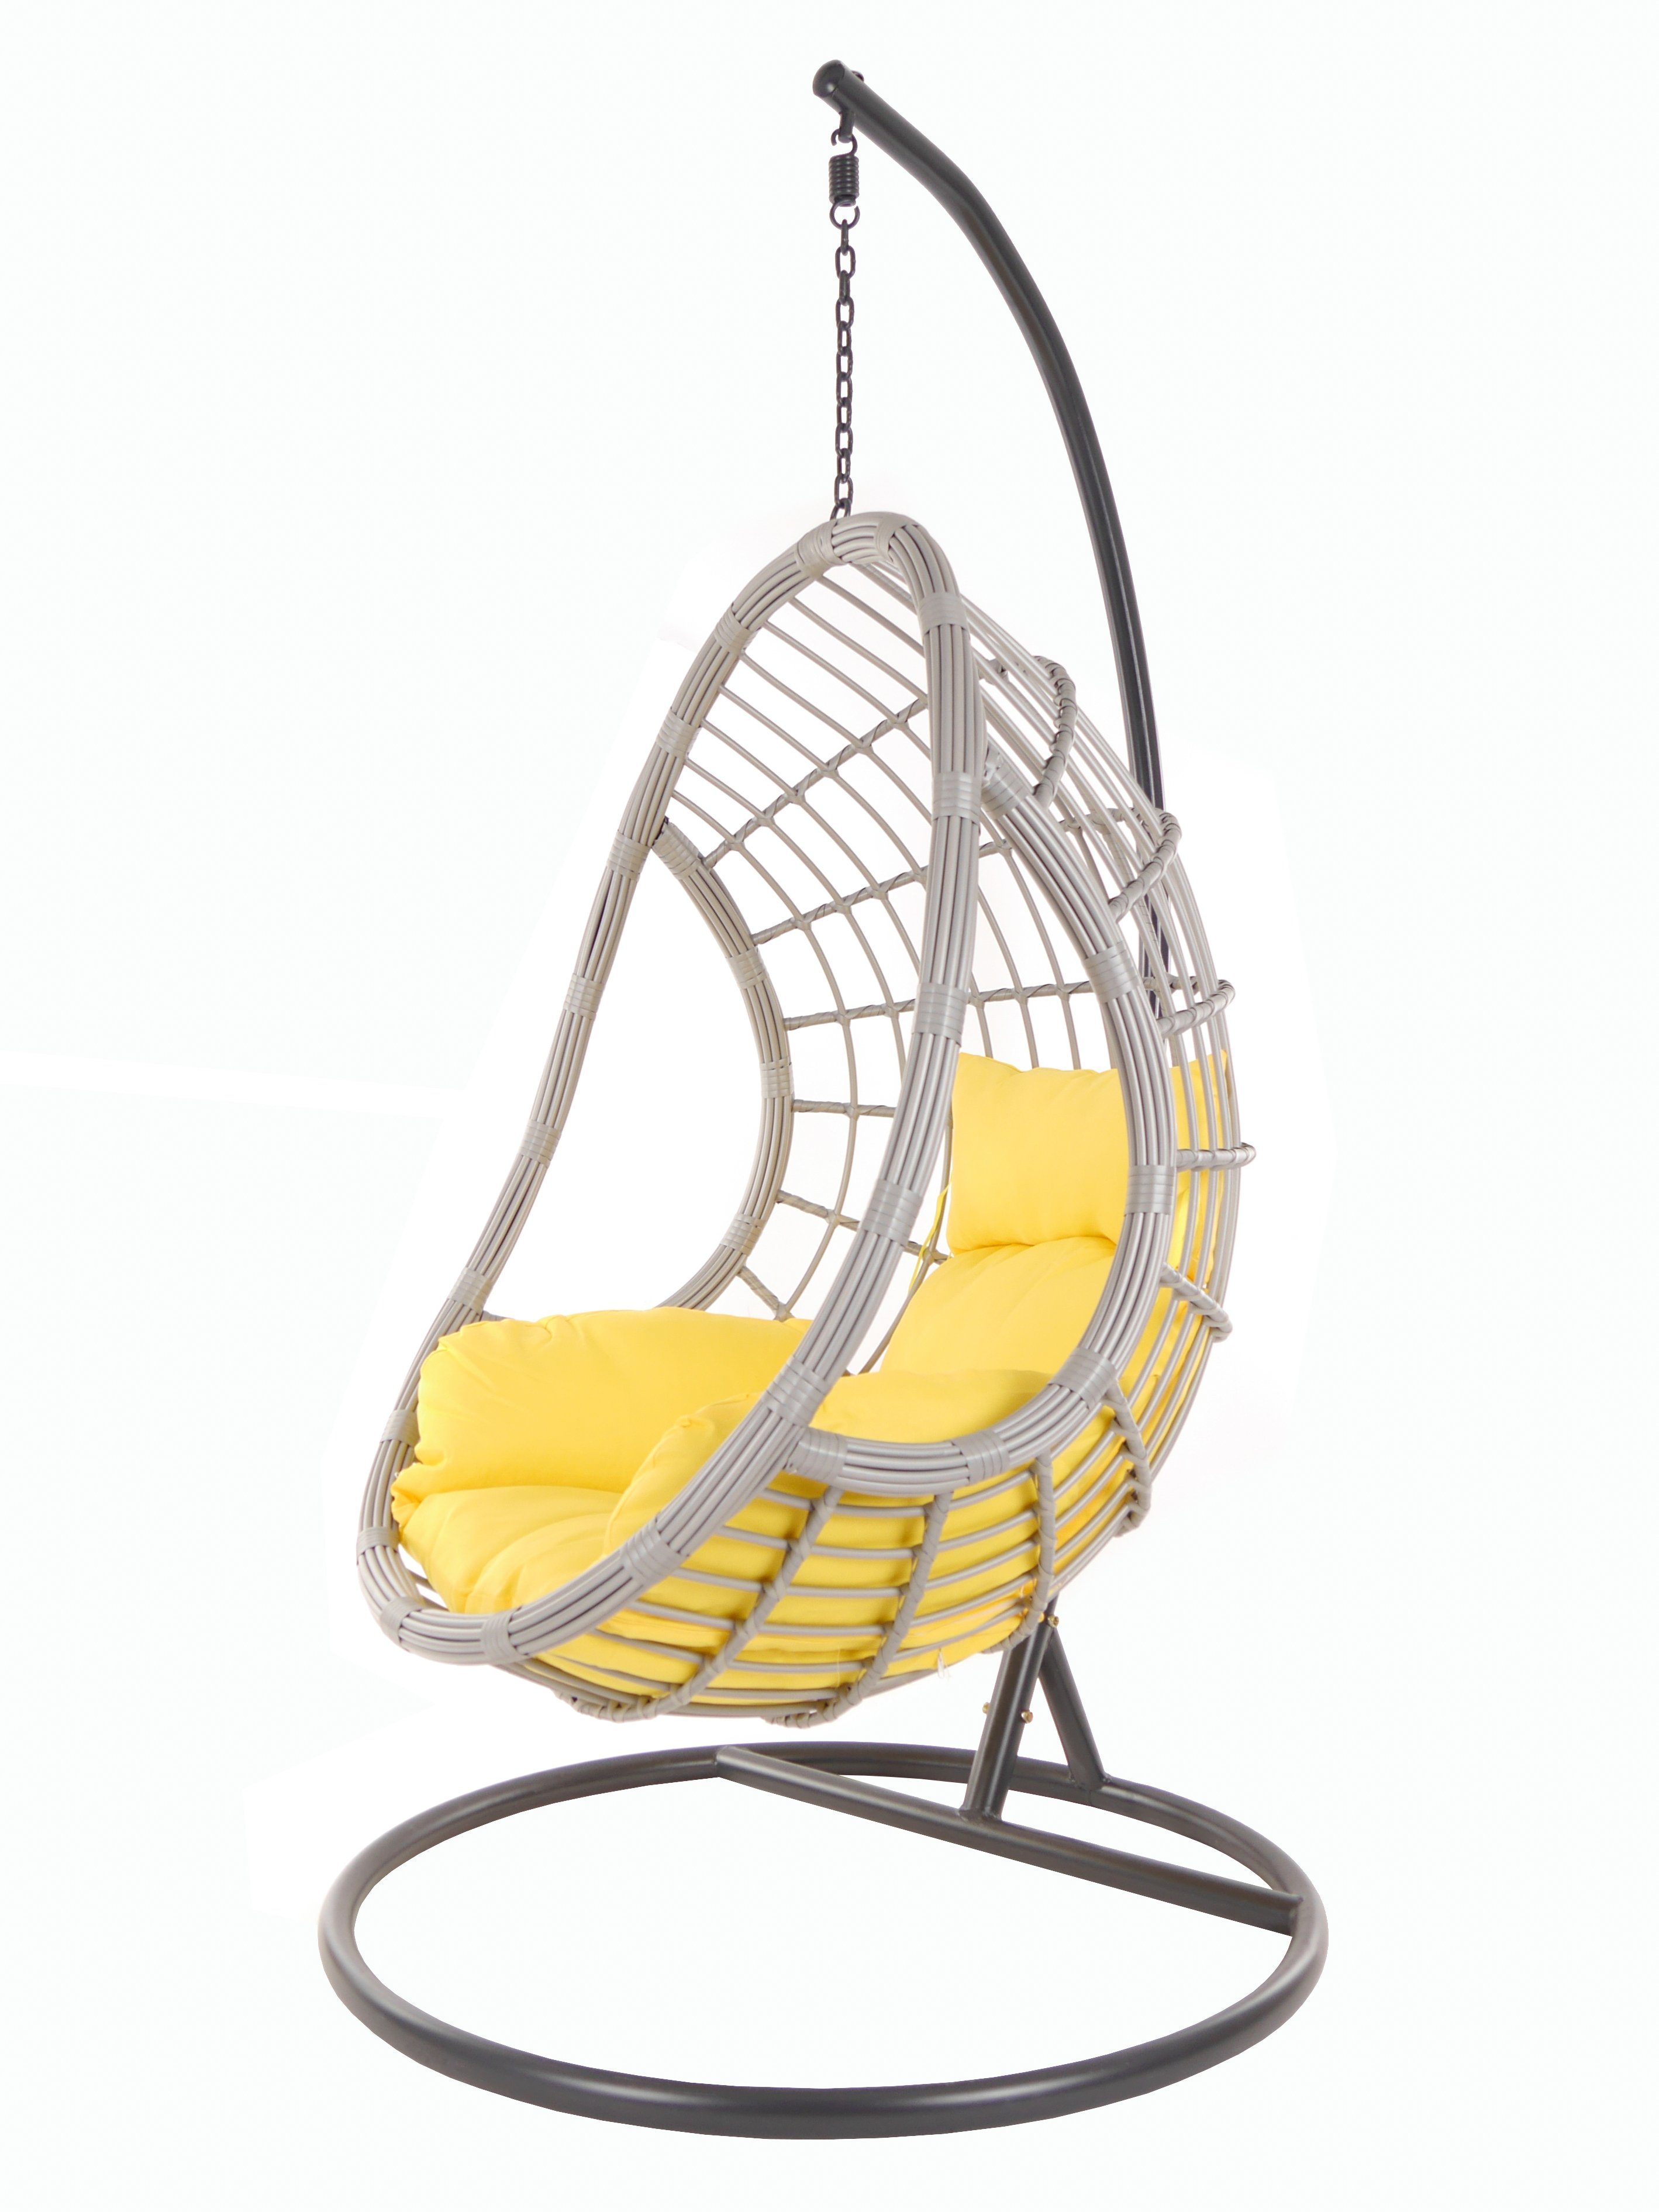 KIDEO Hängesessel PALMANOVA Chair, und gelb (2200 lightgrey, Gestell mit Kissen, Loungemöbel pineapple) Schwebesessel Swing